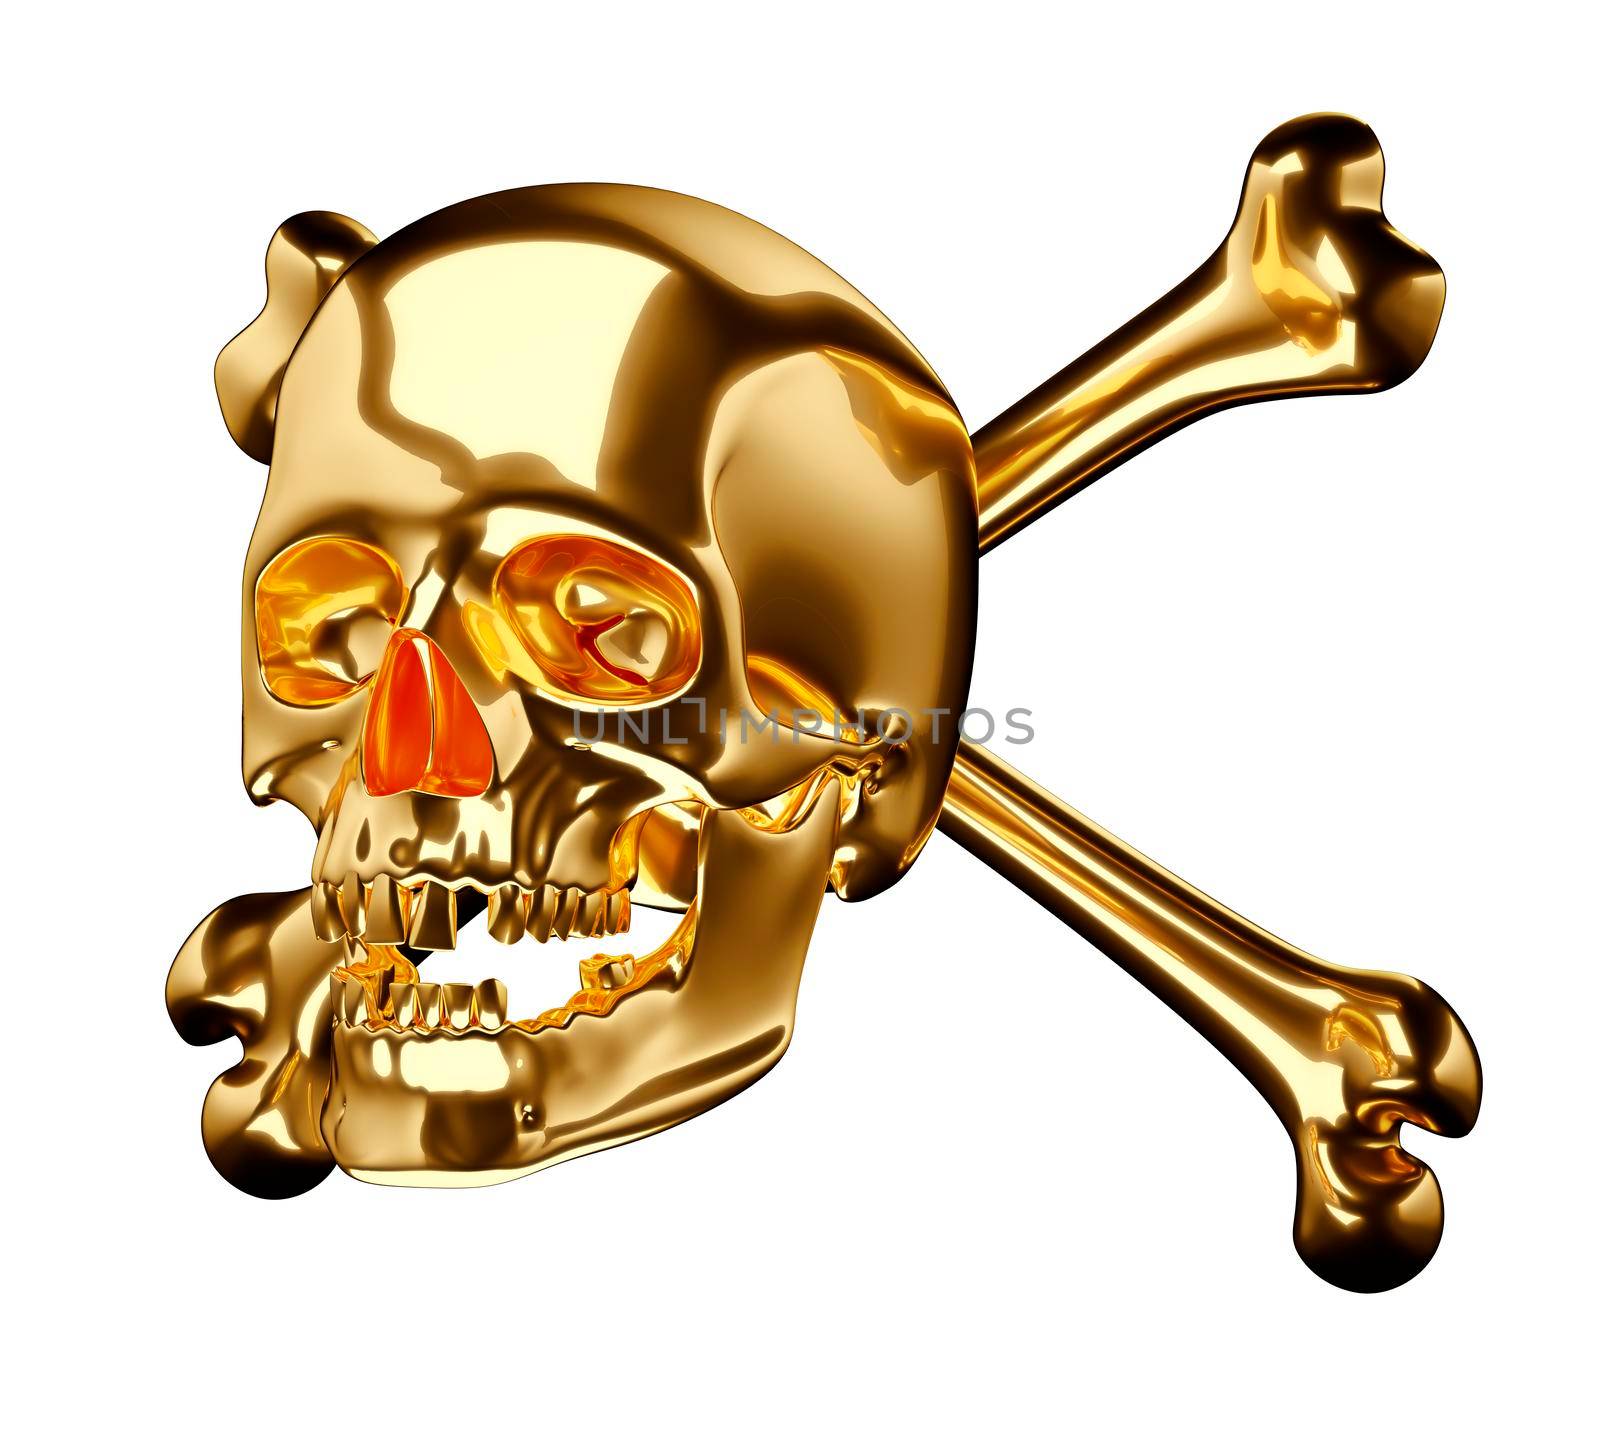 Golden Skull with cross bones or totenkopf isolated on white 3d render 3d illustration